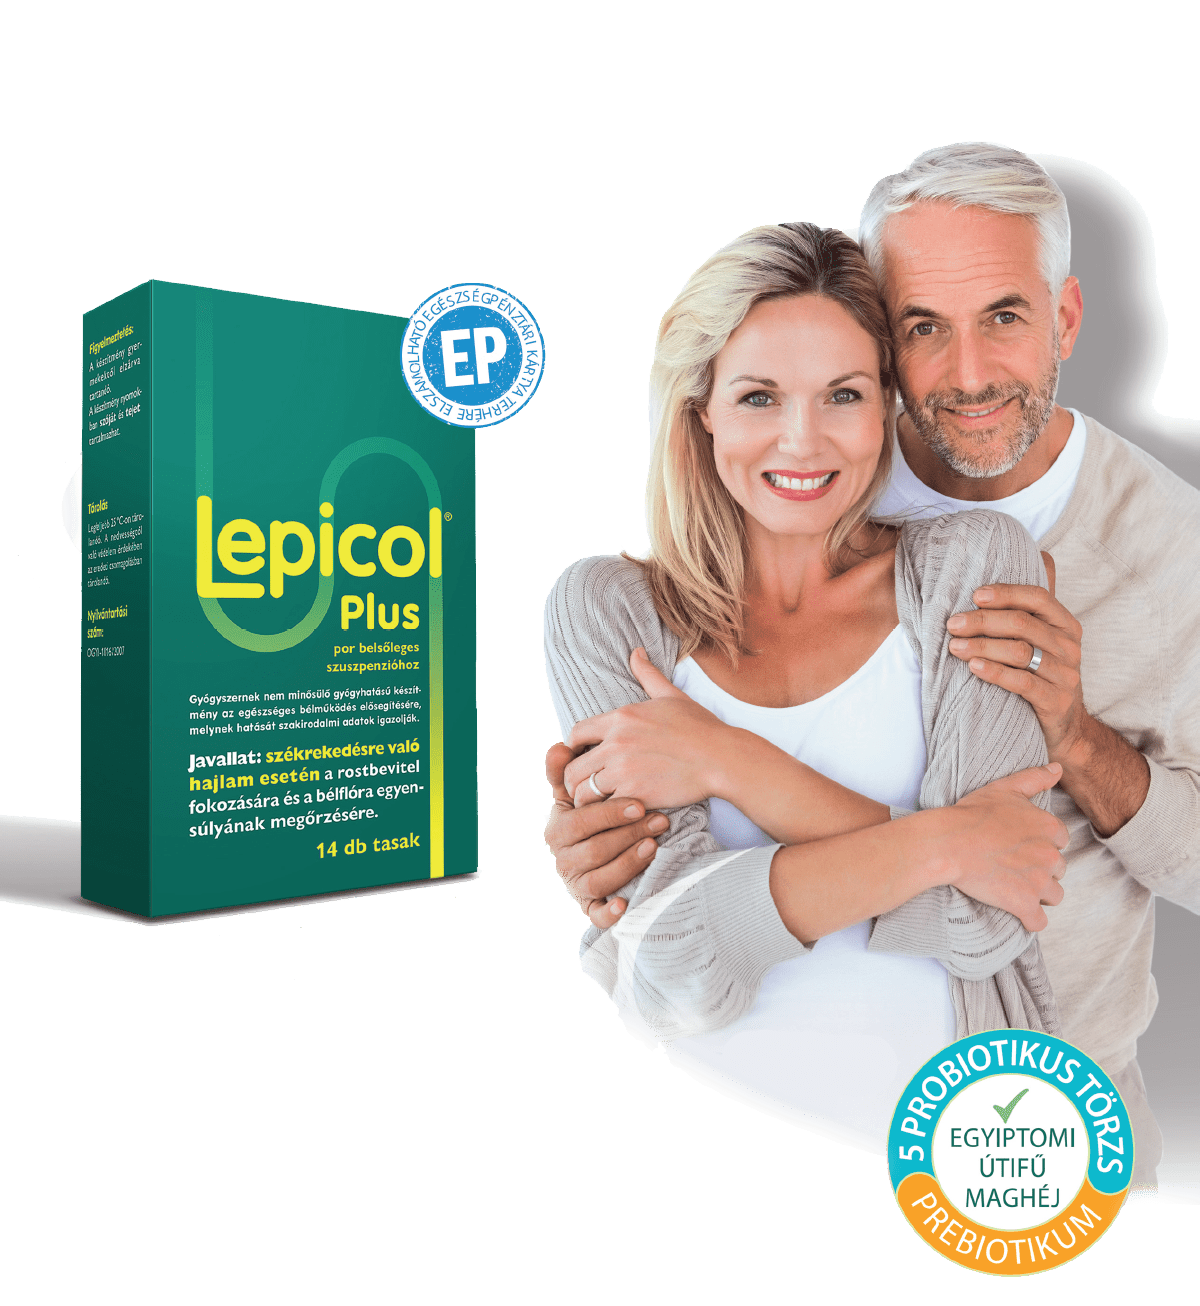 Lepicol Plus - A nagy dolgok is könnyen mennek